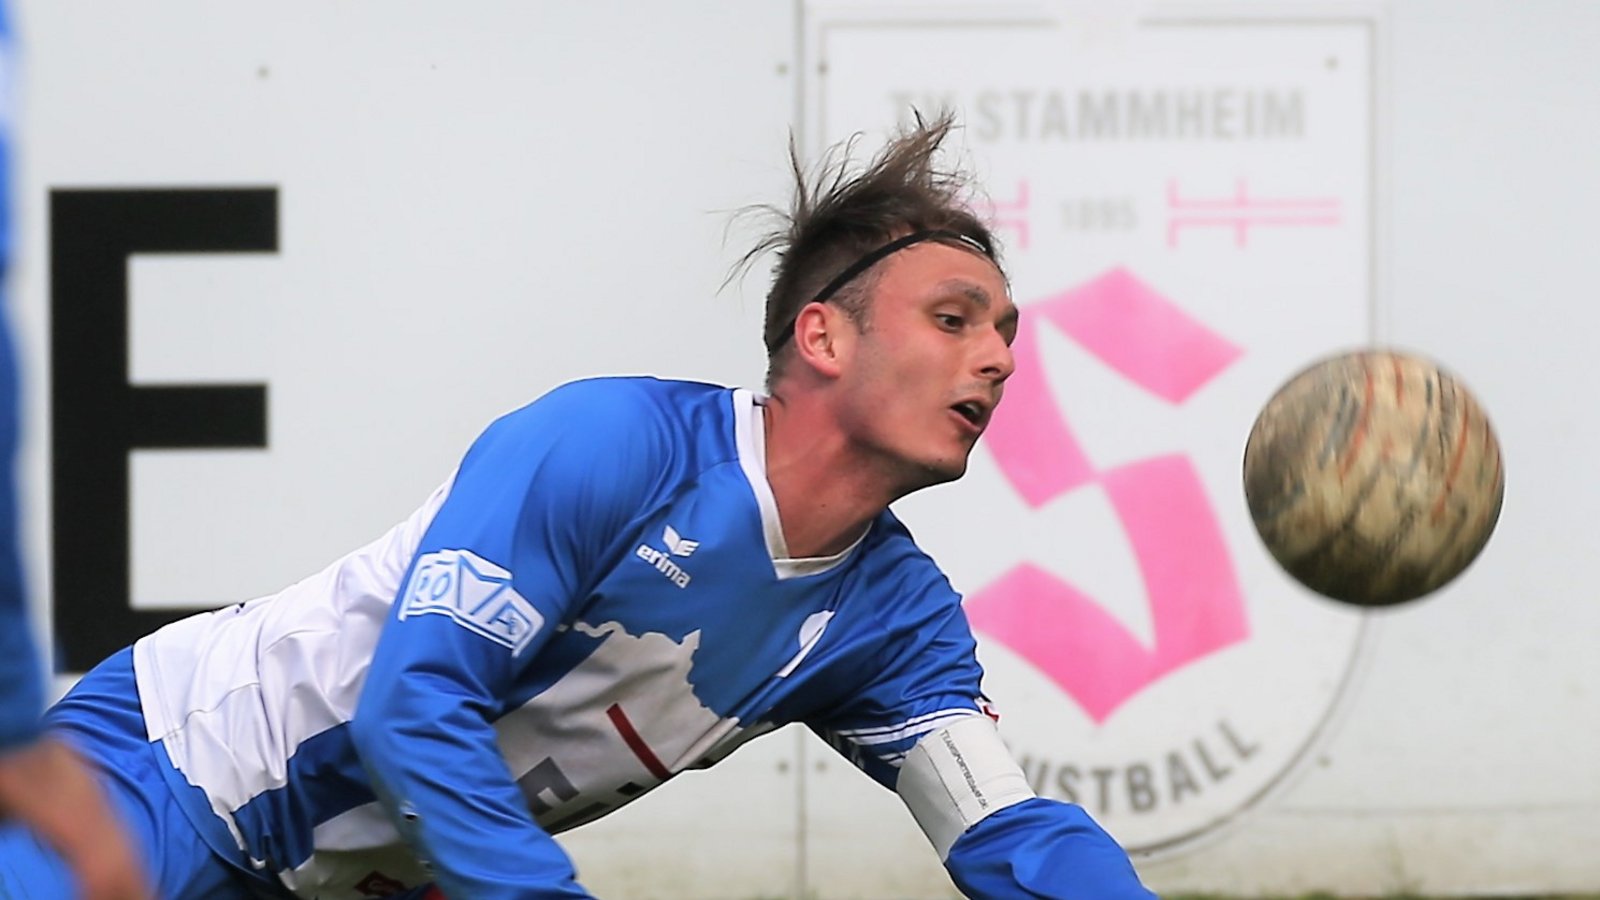 Auf der neugestalteten Faustballanlage in Stammheim hechtet sich Jaro Jungclaussen nach dem ungewohnt hoch springenden Ball.   Foto: Küppers